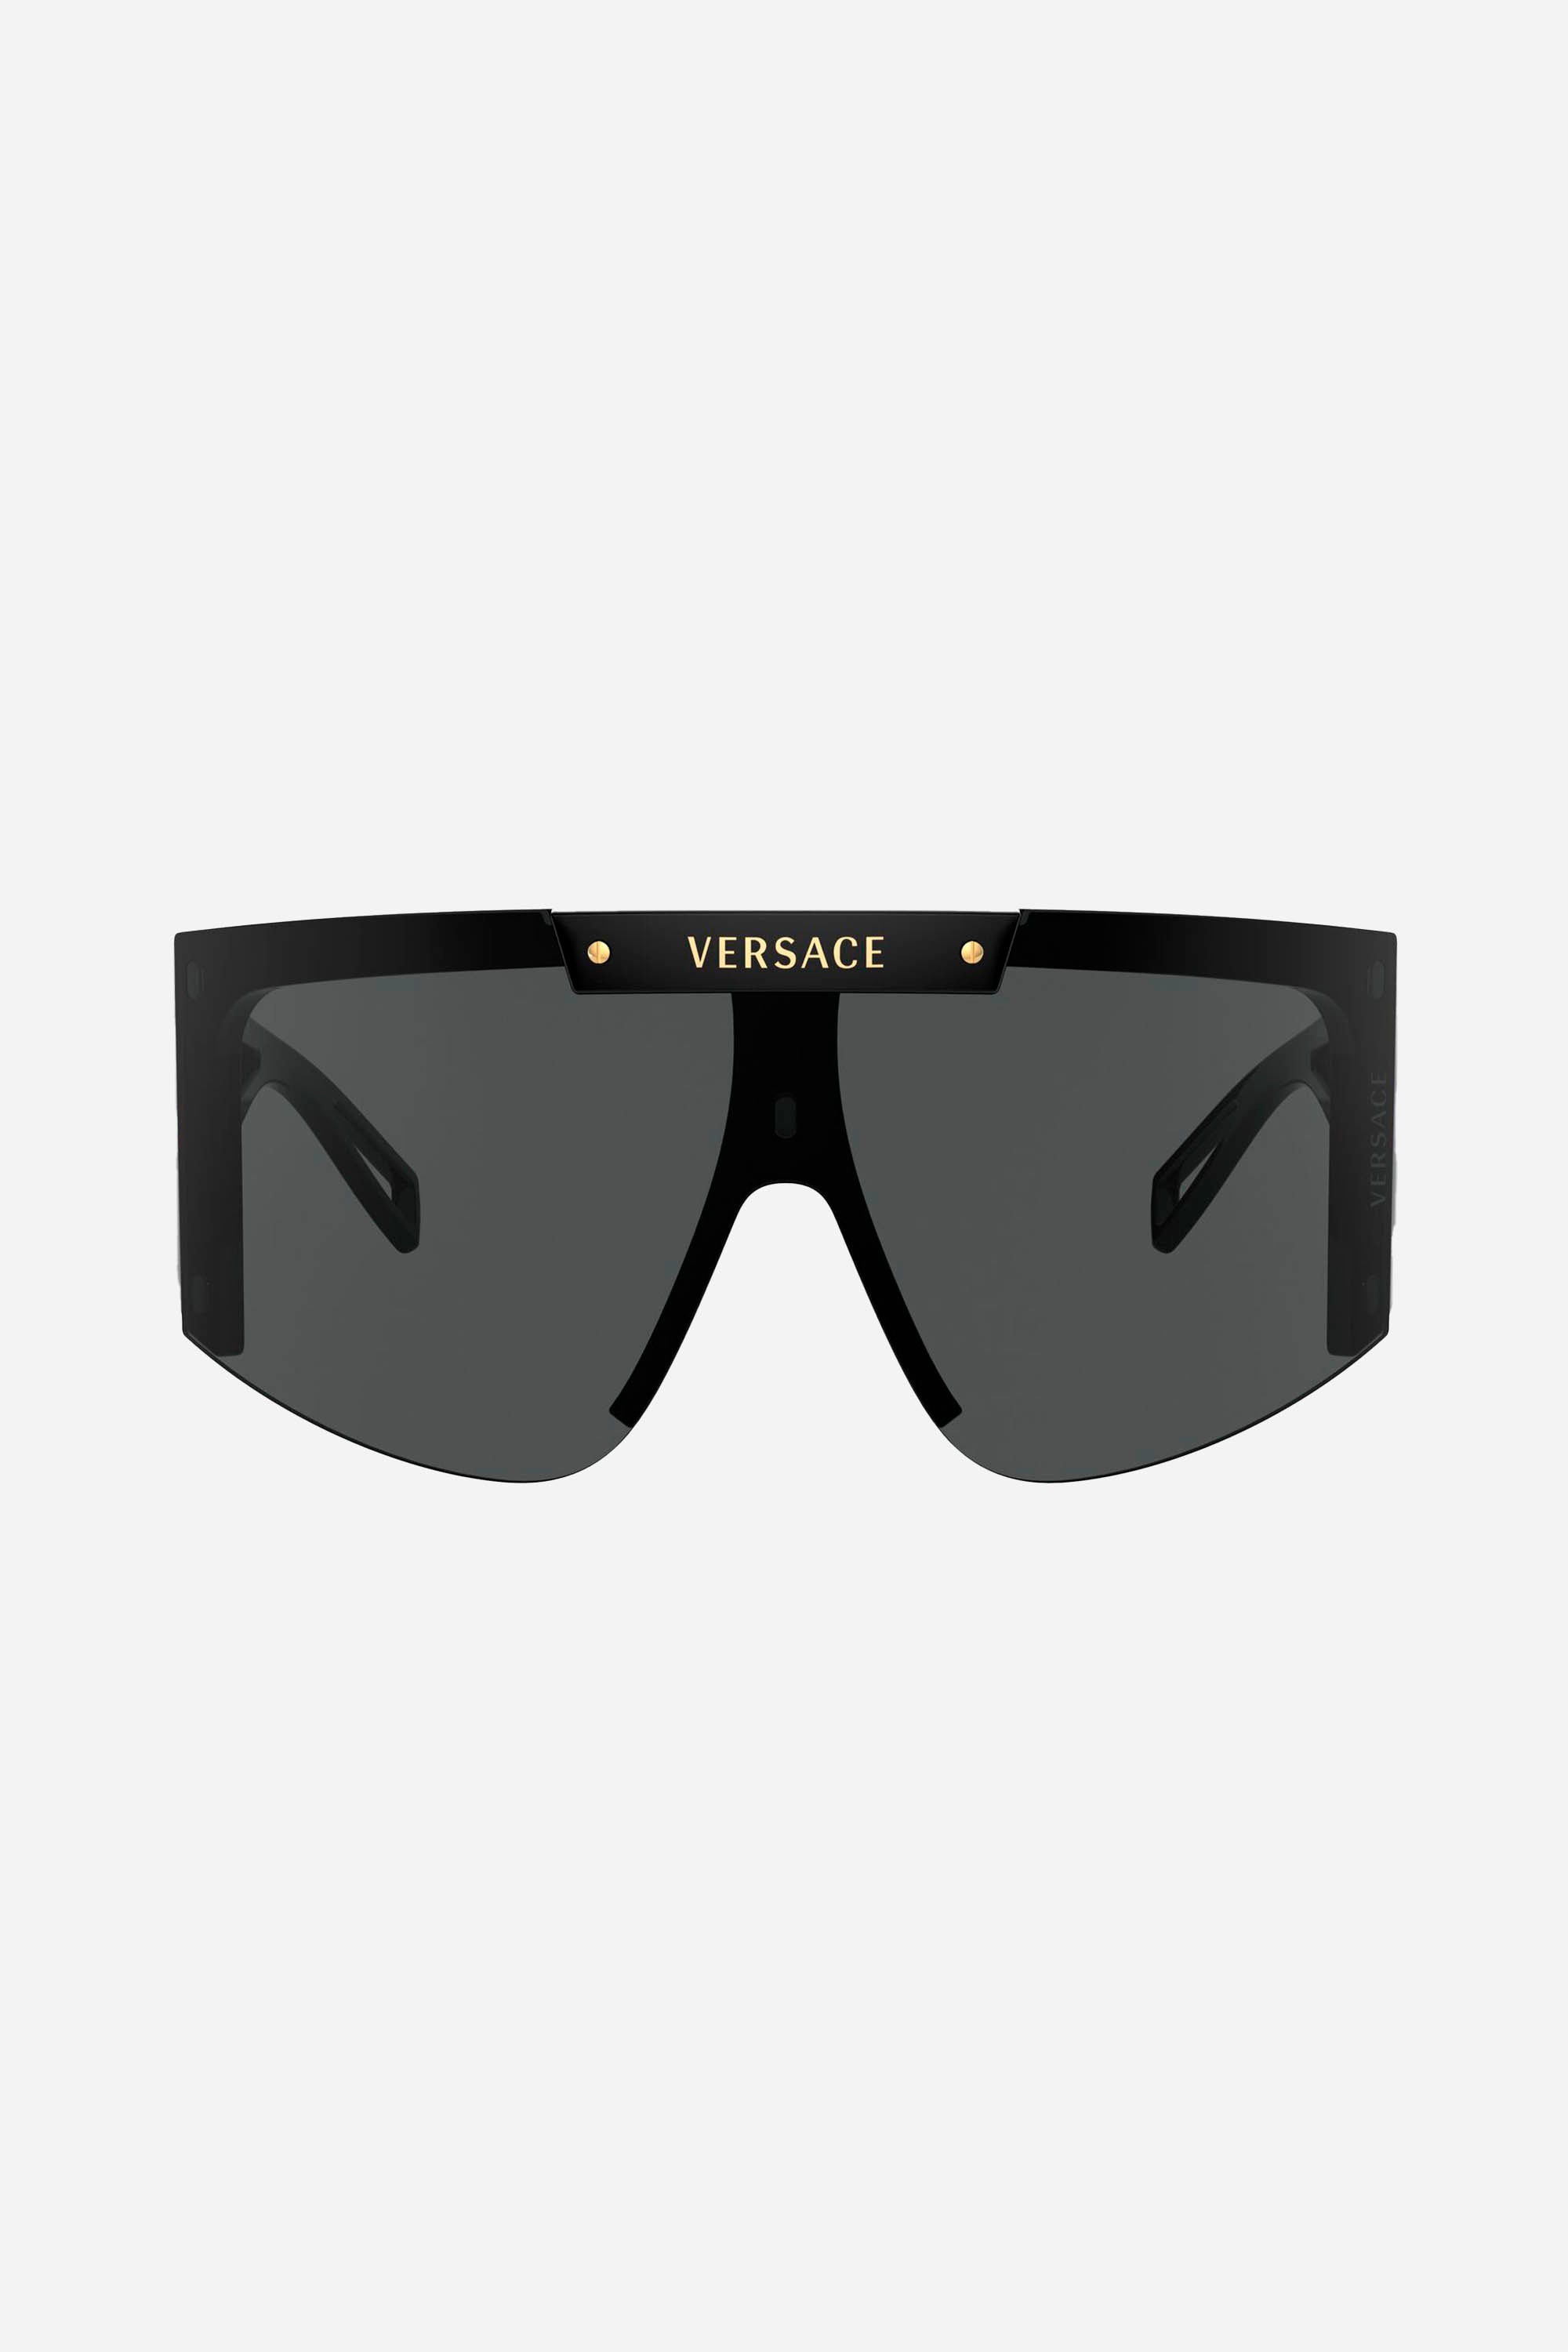 Versace interchangeable mask - Eyewear Club